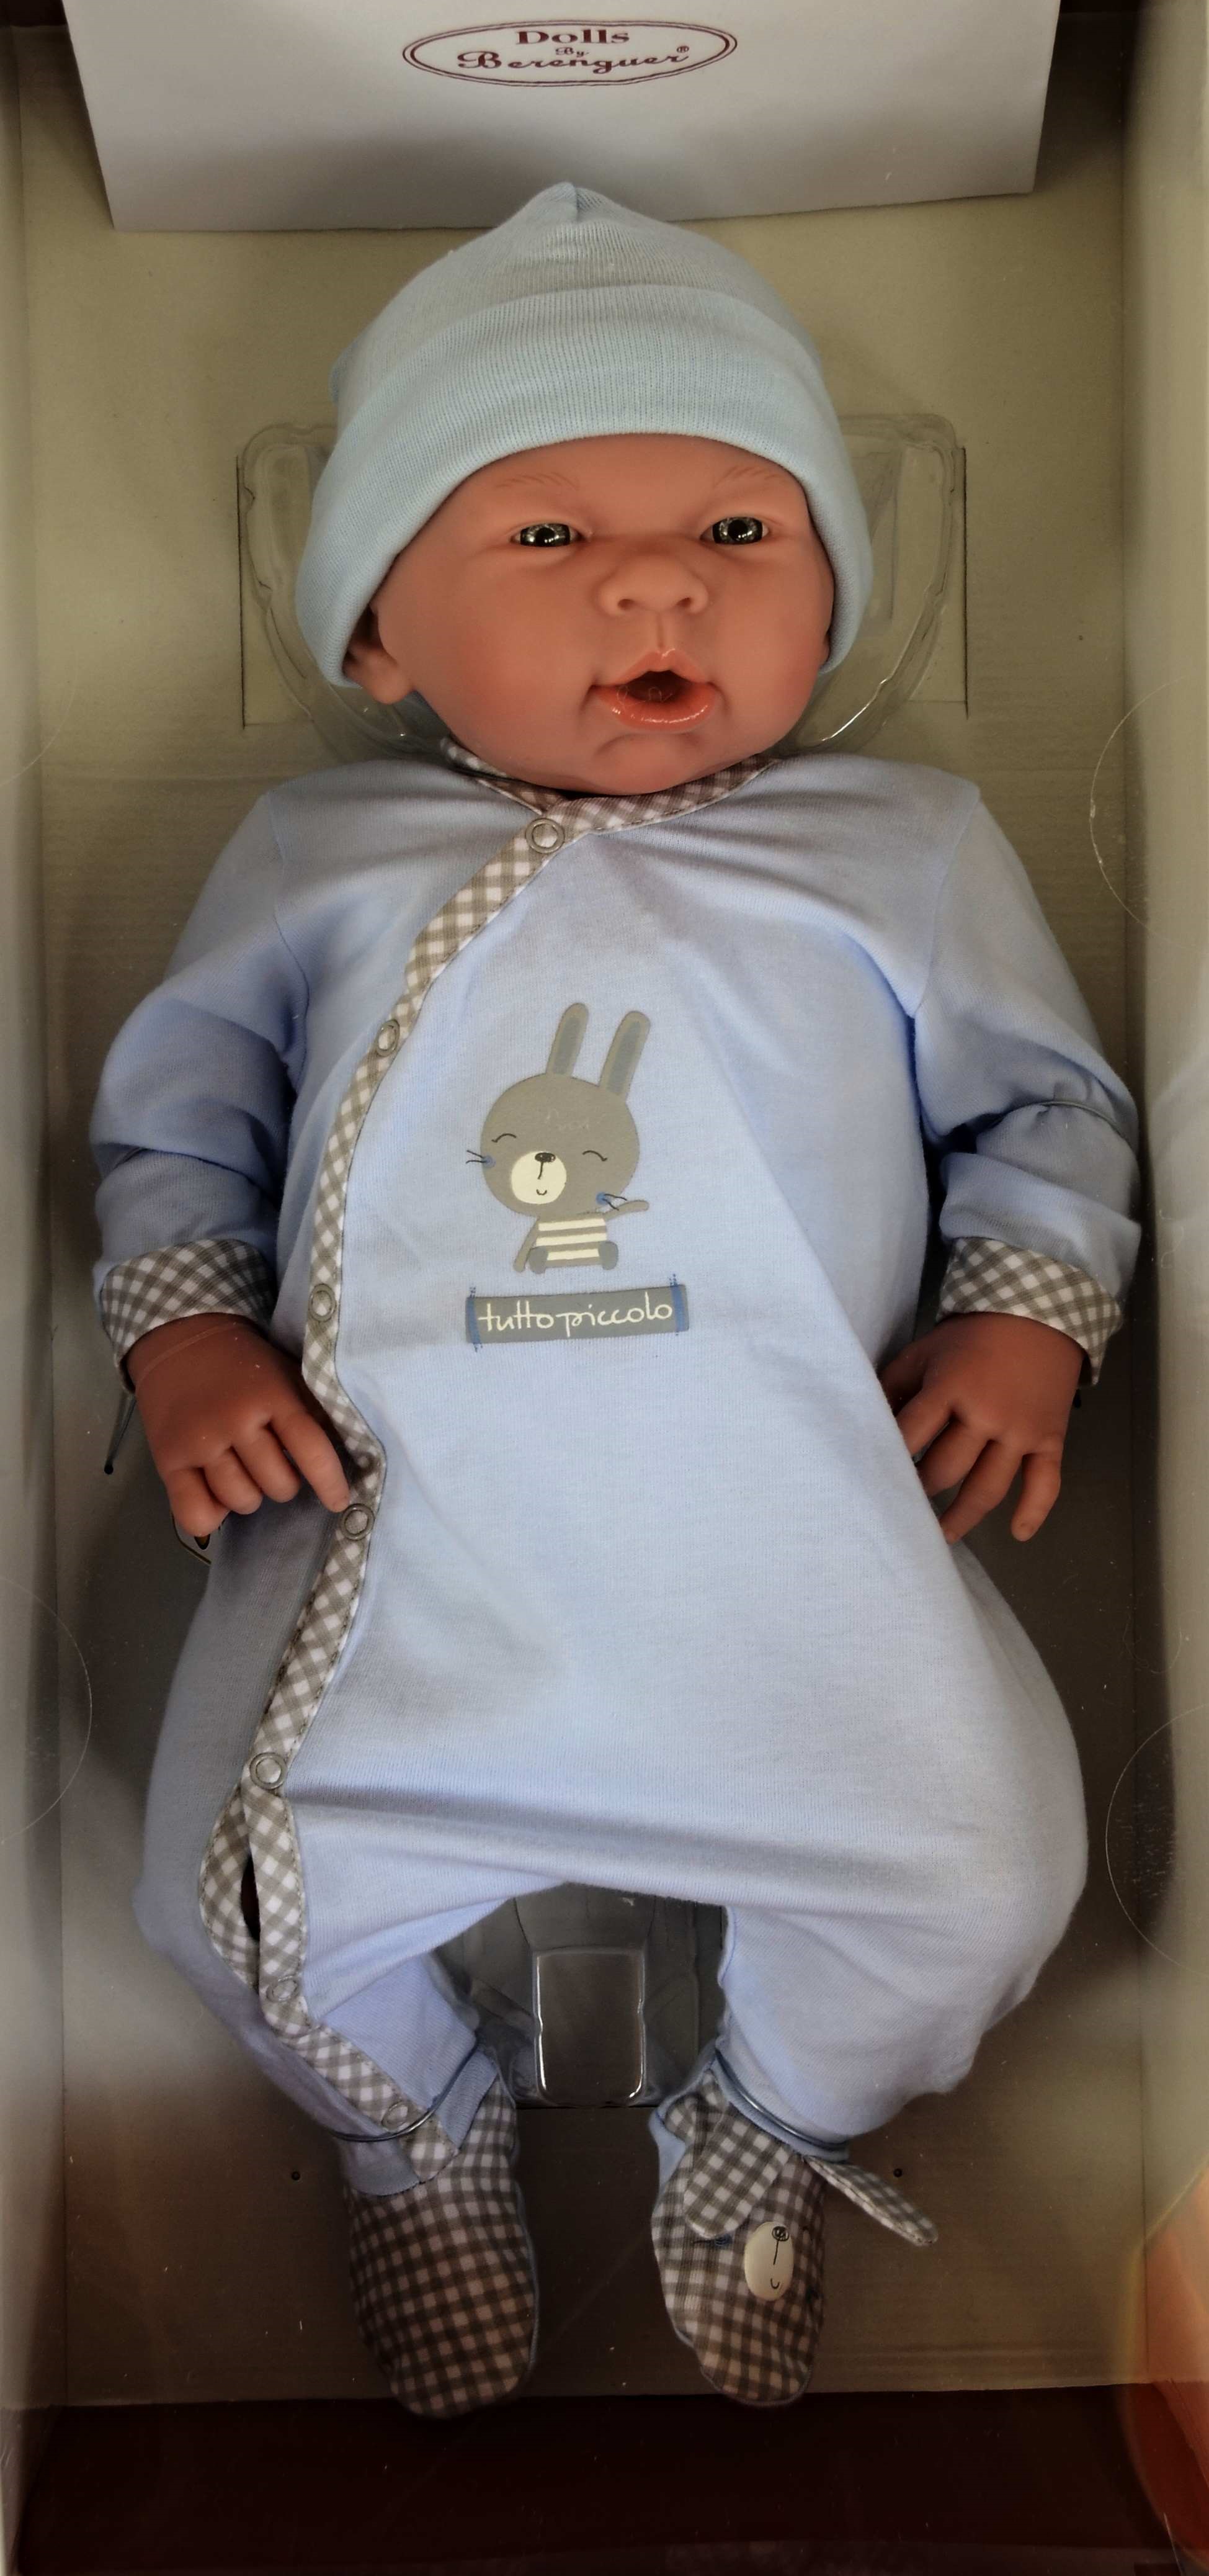 Realistické miminko - chlapeček Emilio od firmy Berenguer ze Španělska